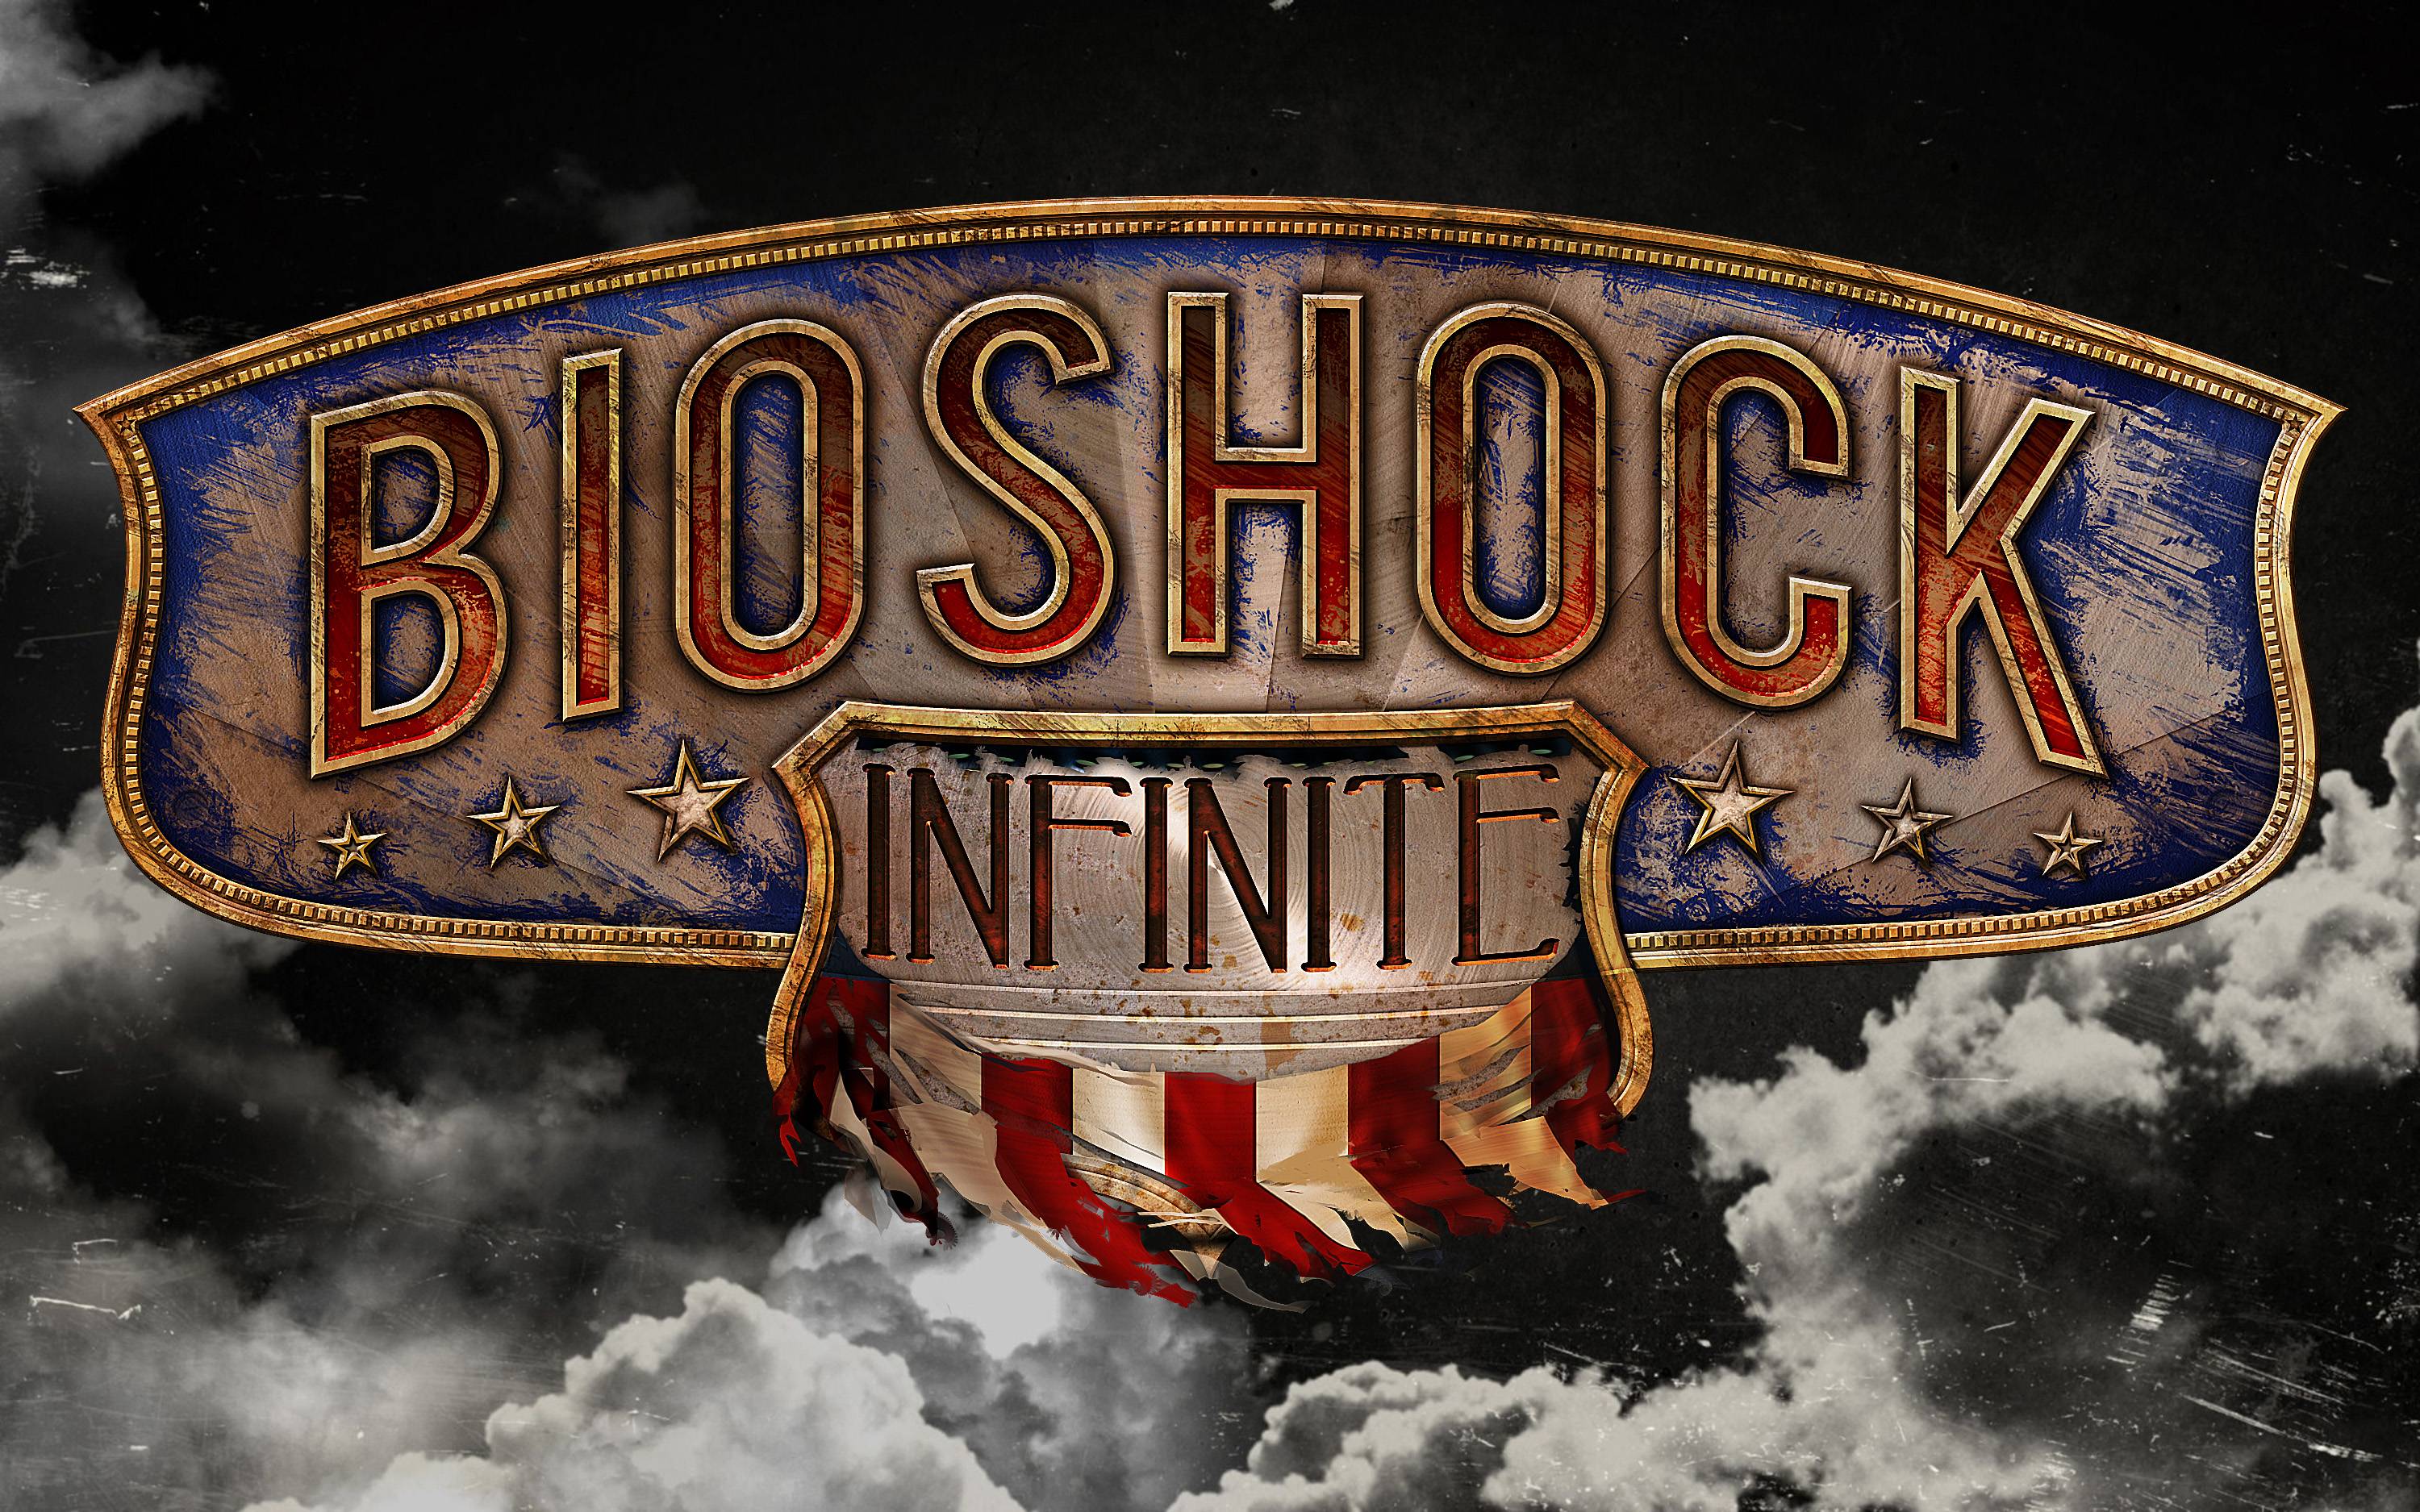 Bioshock Infinite Wallpaper. Bioshock Infinite Background